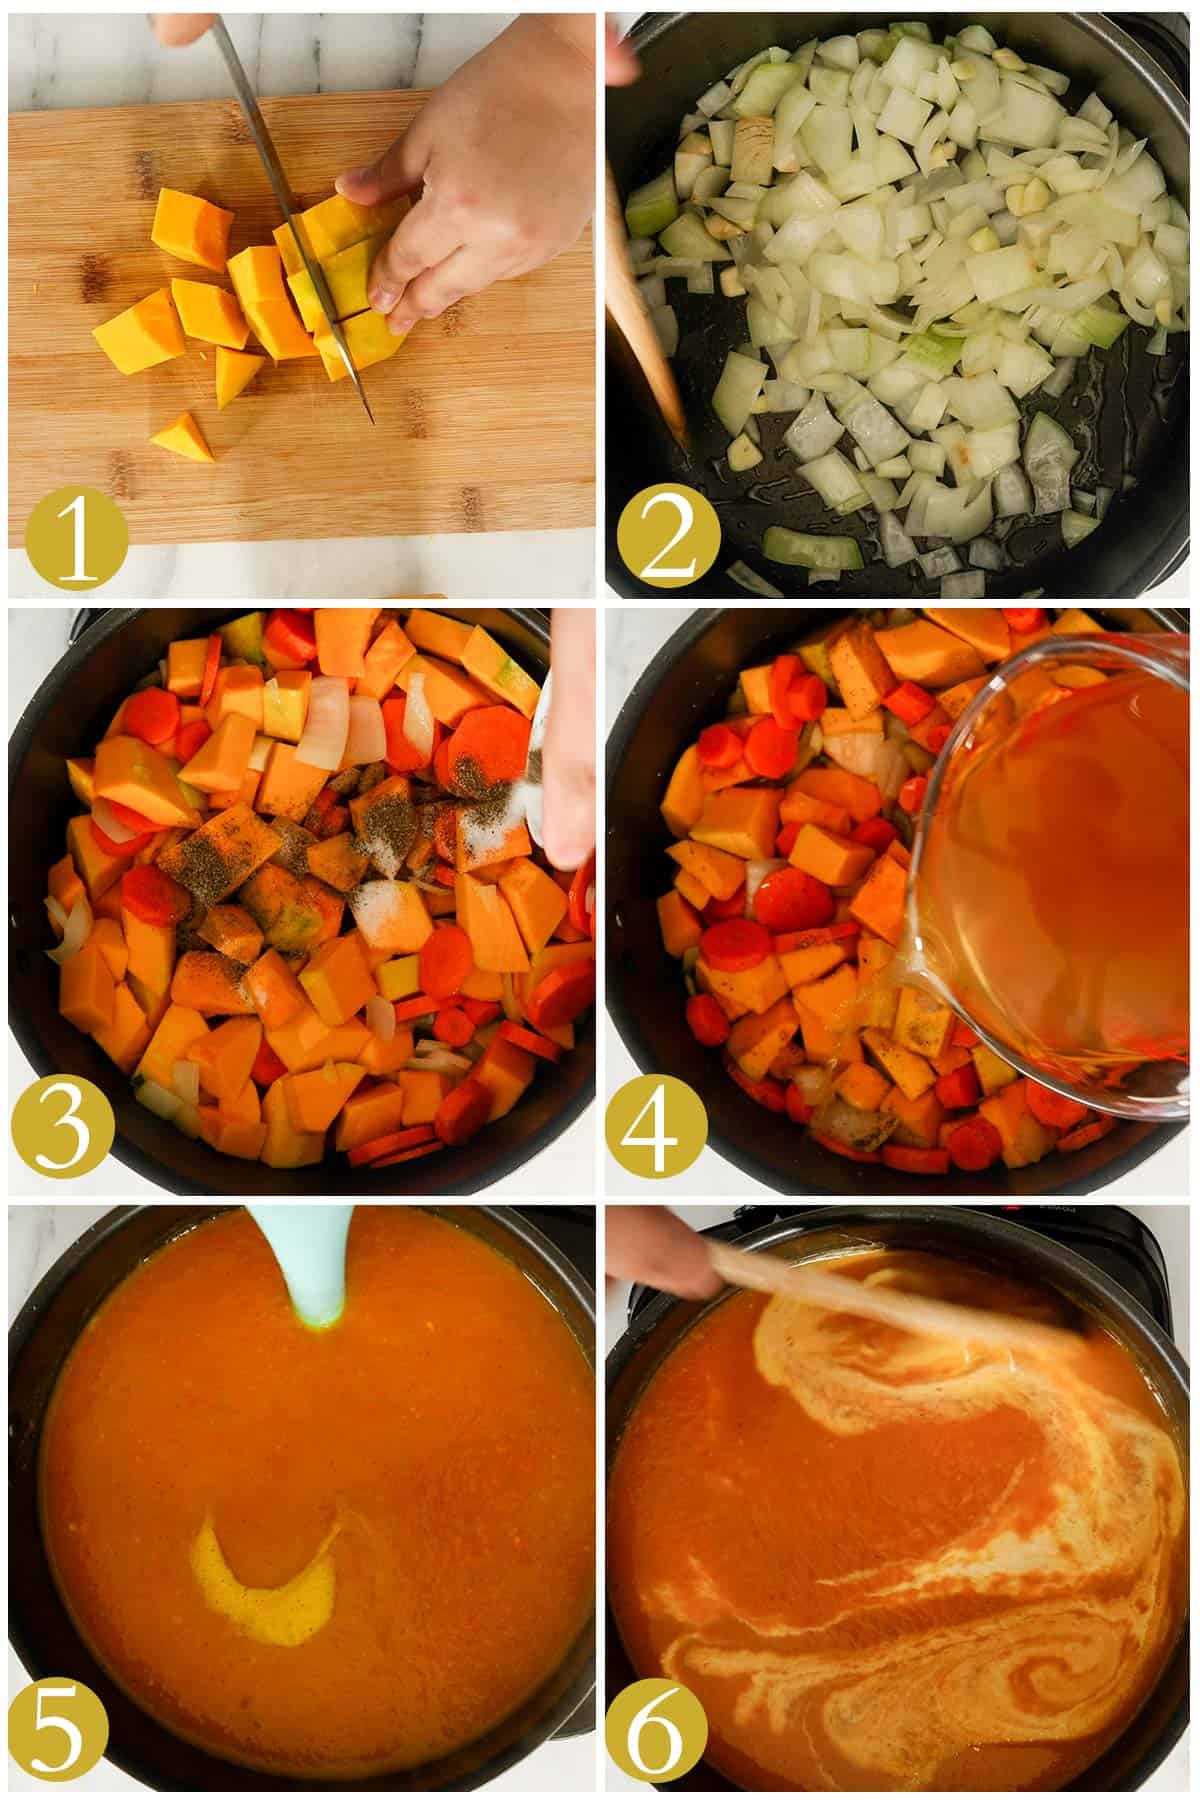 imagenes de los pasos a seguir para hacer una sopa de calabaza.